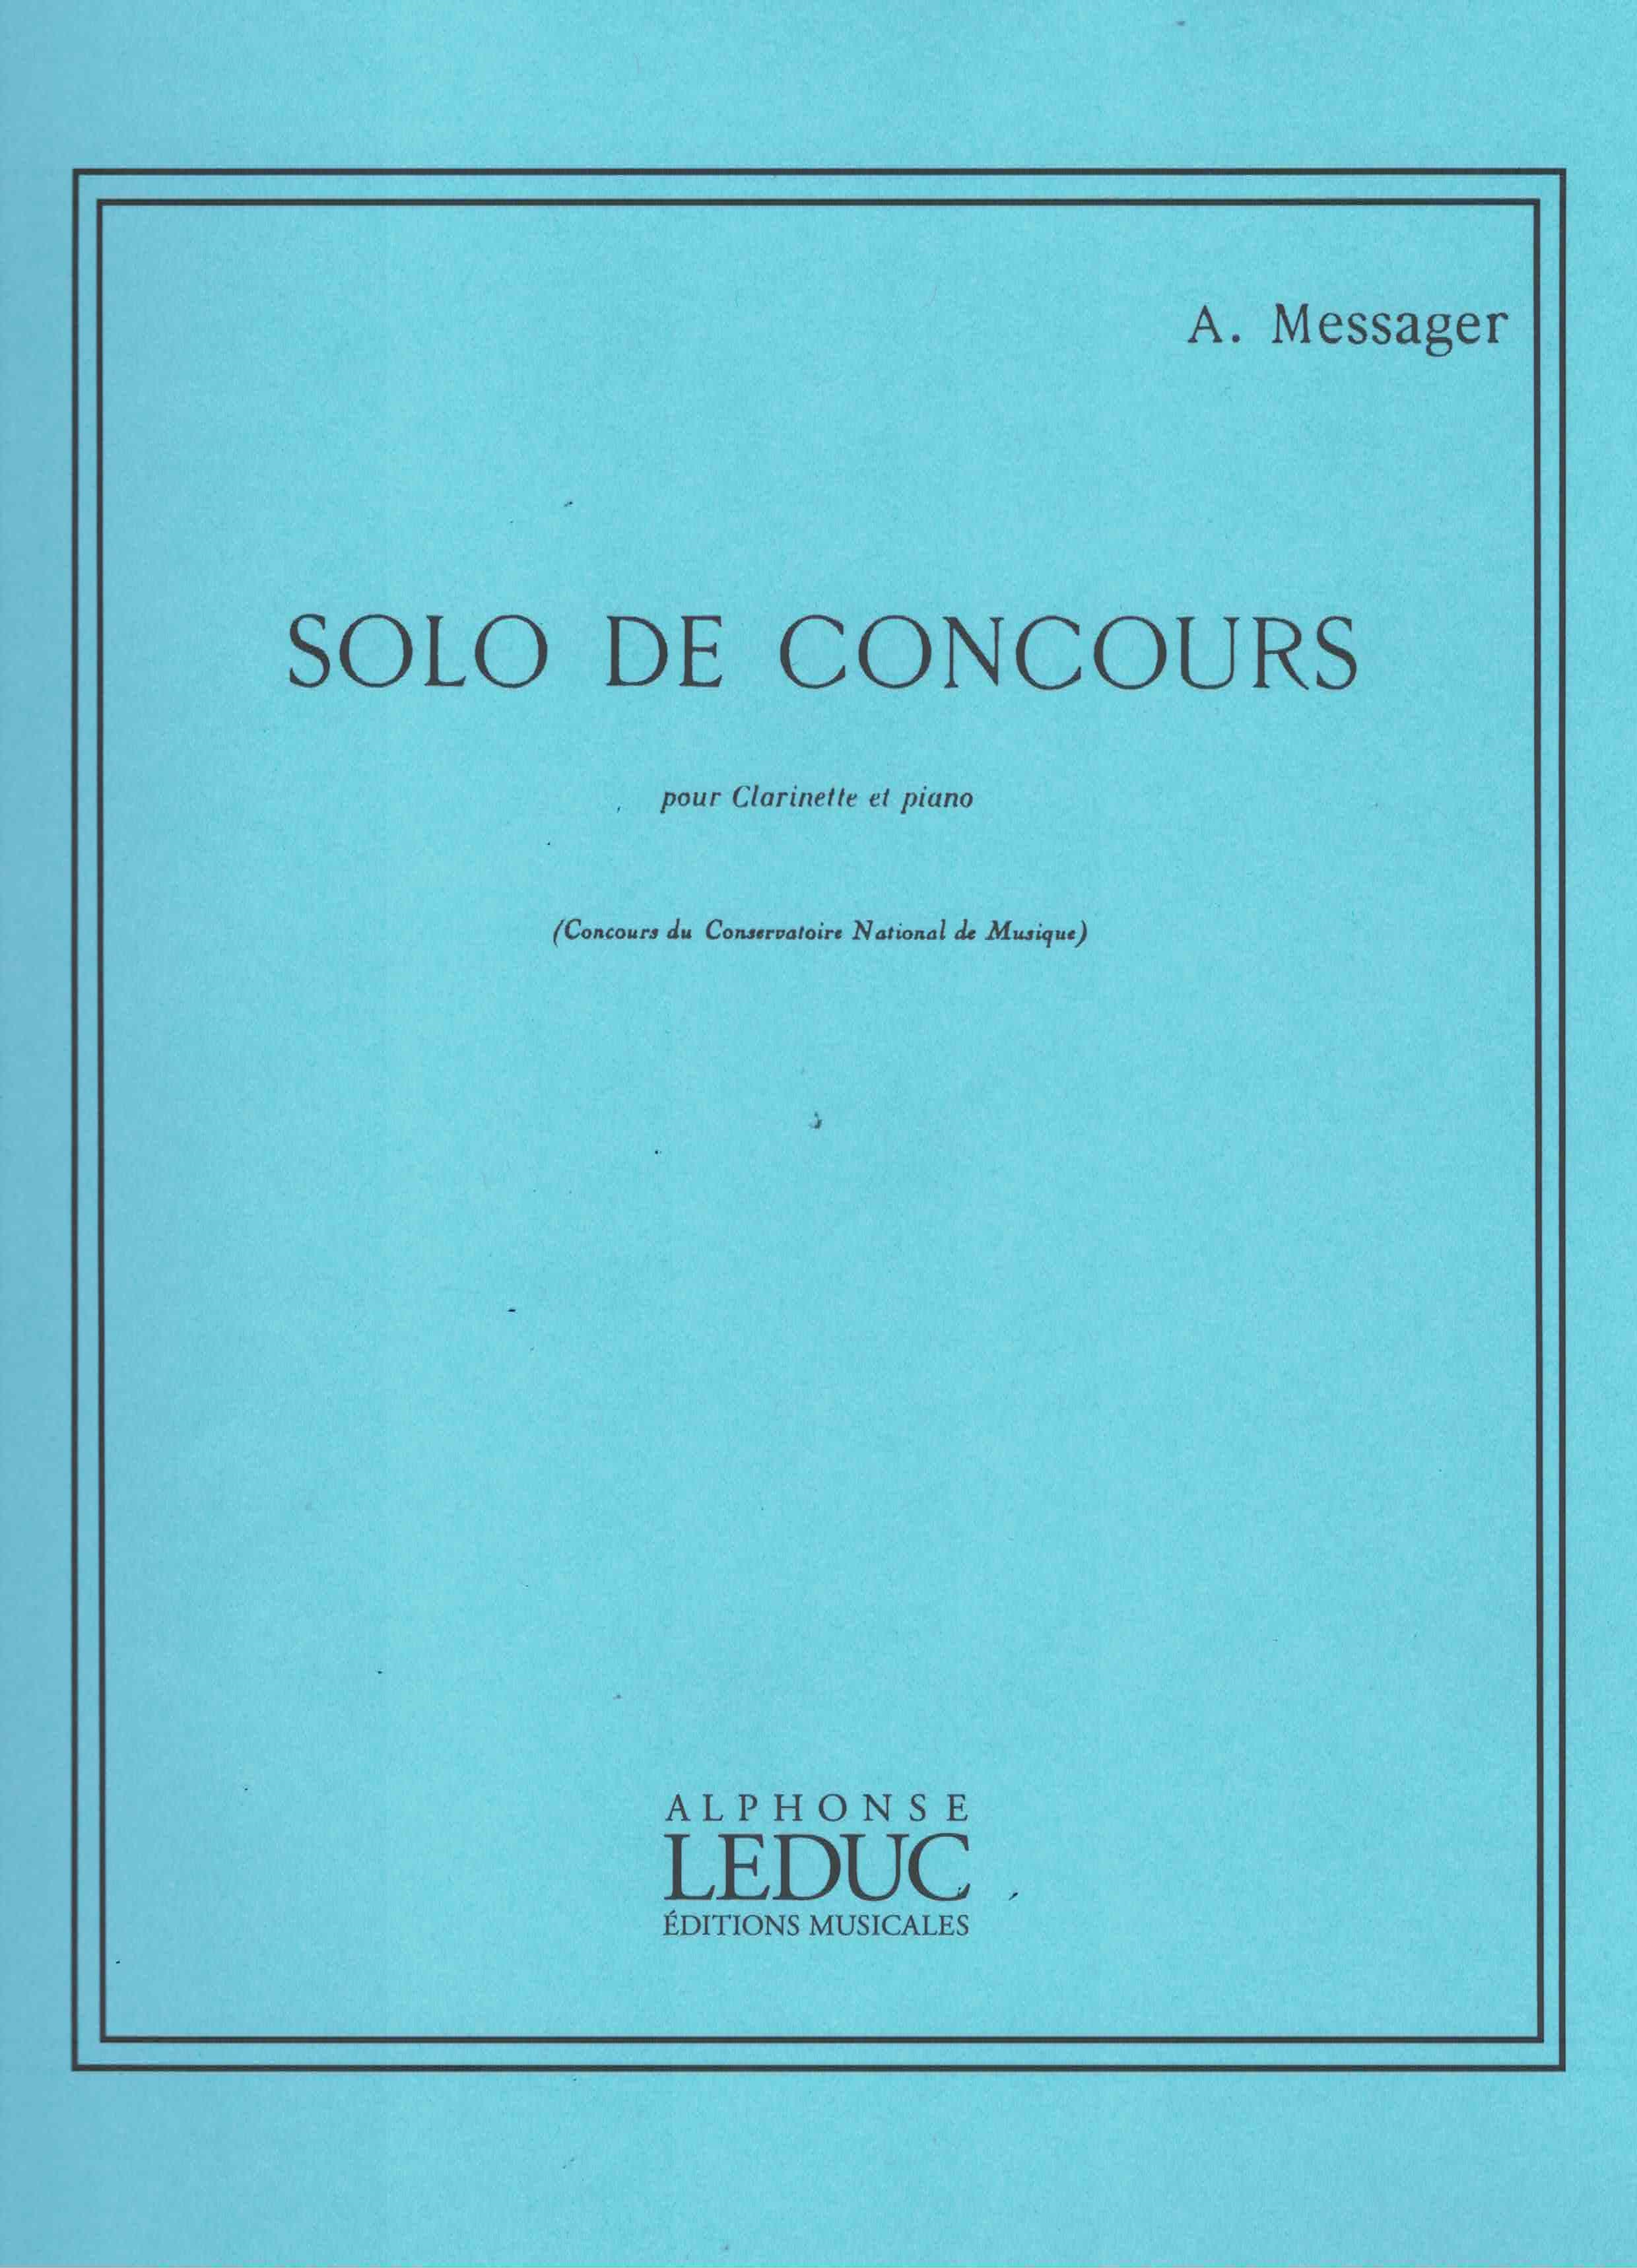 Solo de Concours - Messager, Klarinette/Klavier